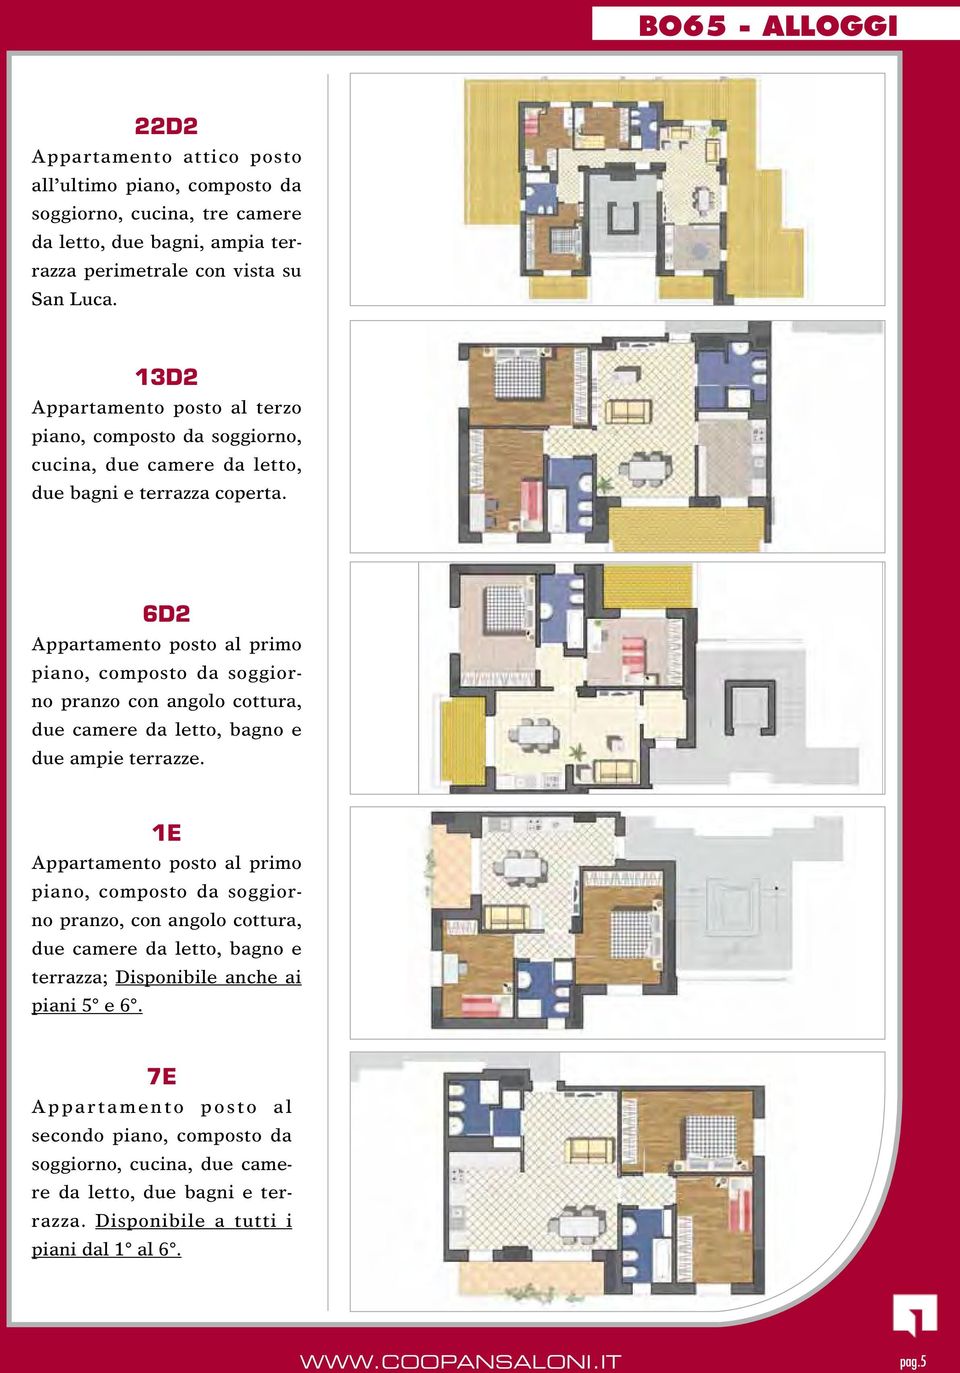 6D2 Appartamento posto al primo piano, composto da soggiorno pranzo con angolo cottura, due camere da letto, bagno e due ampie terrazze.